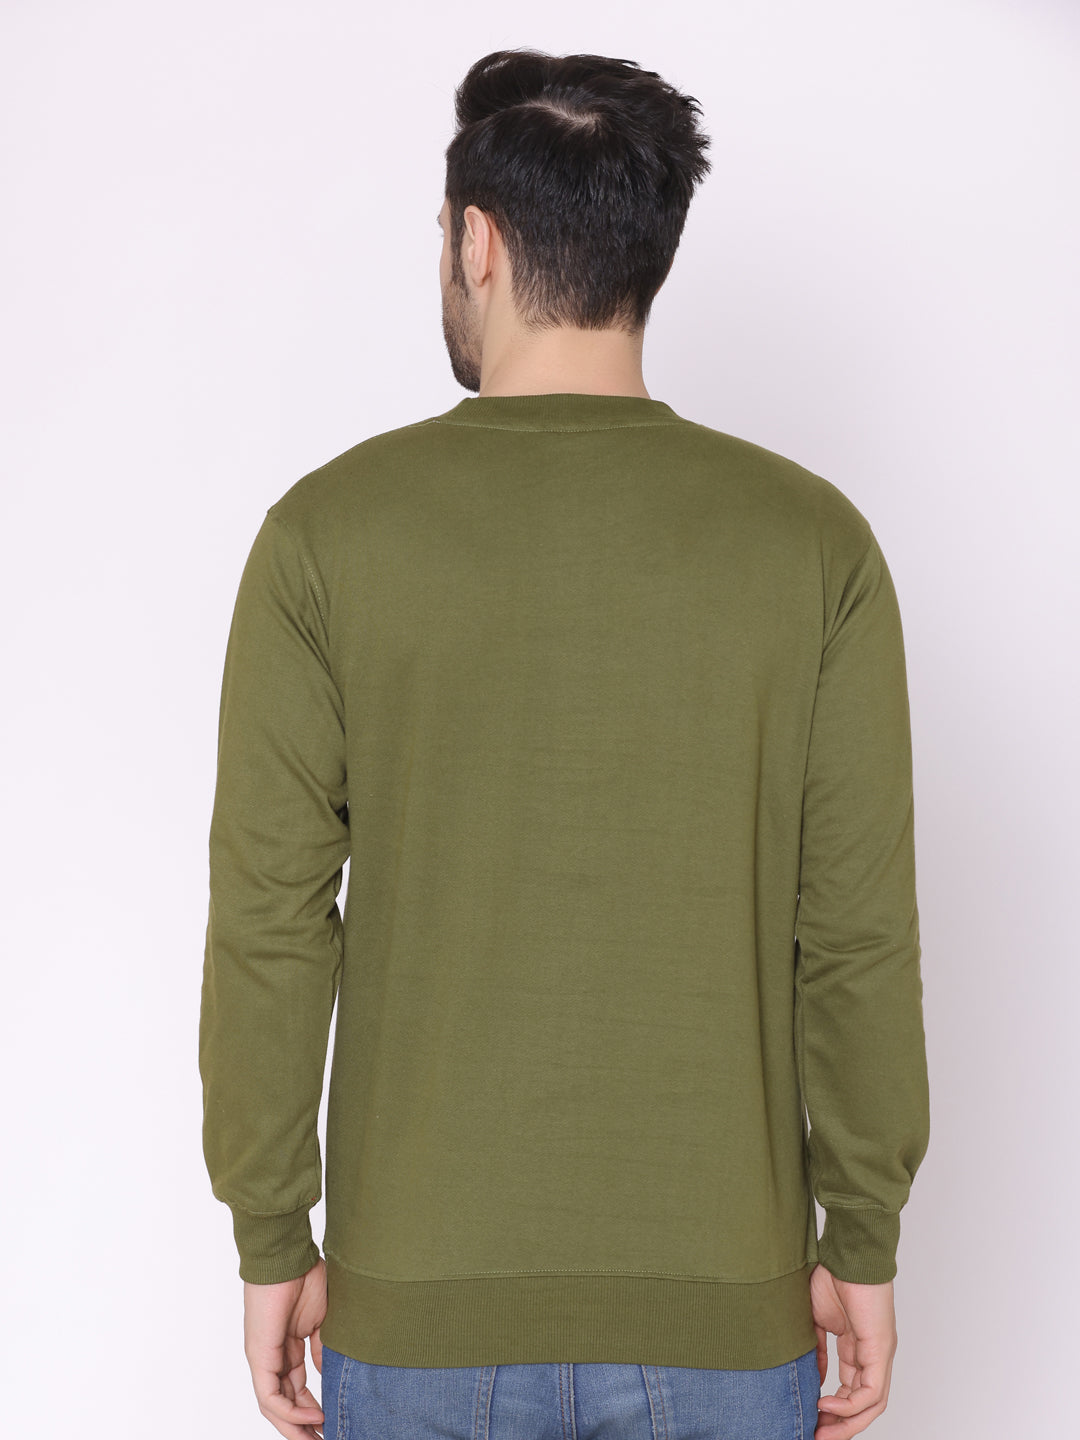 Men's Olive Solid Cotton Fleece Sweatshirt